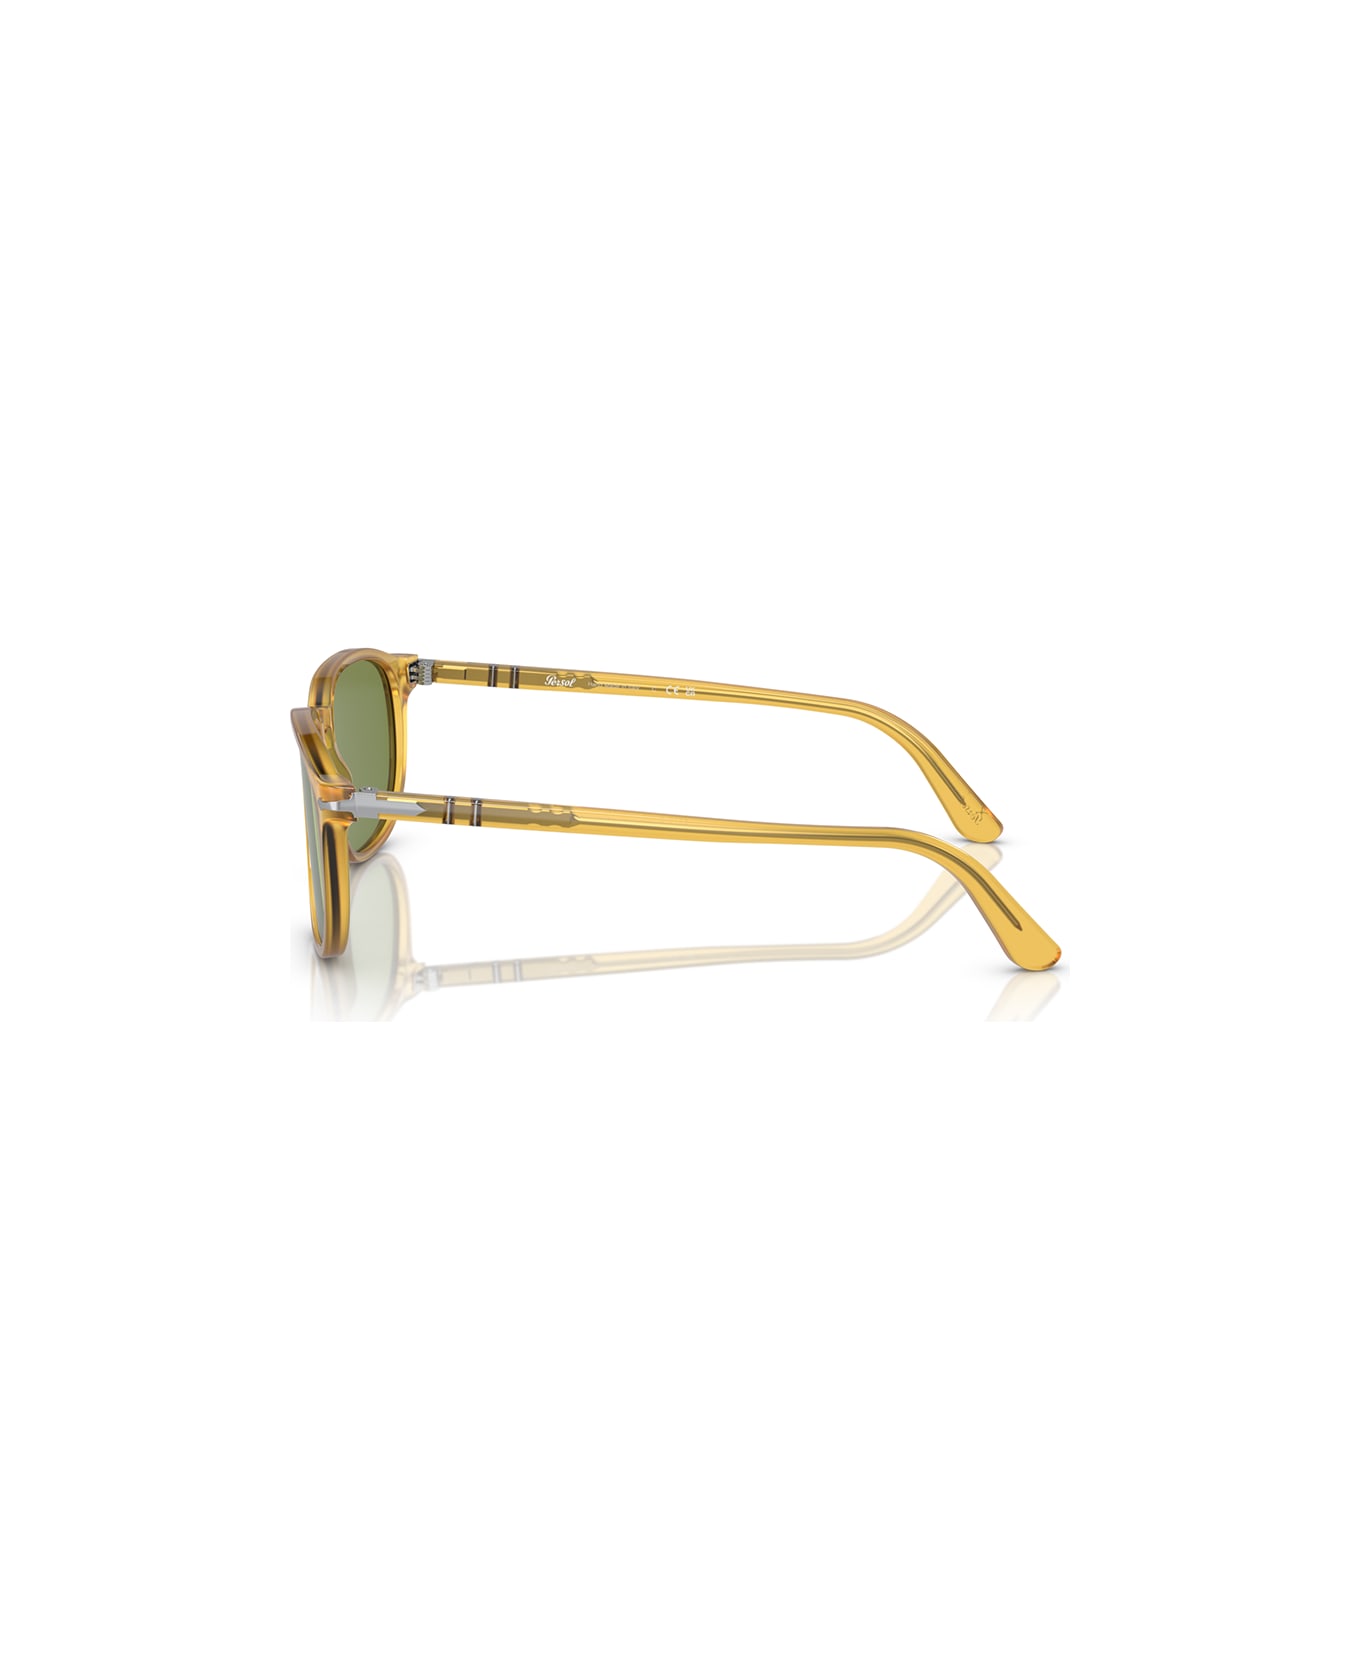 Persol Sunglasses - Miele/Verde